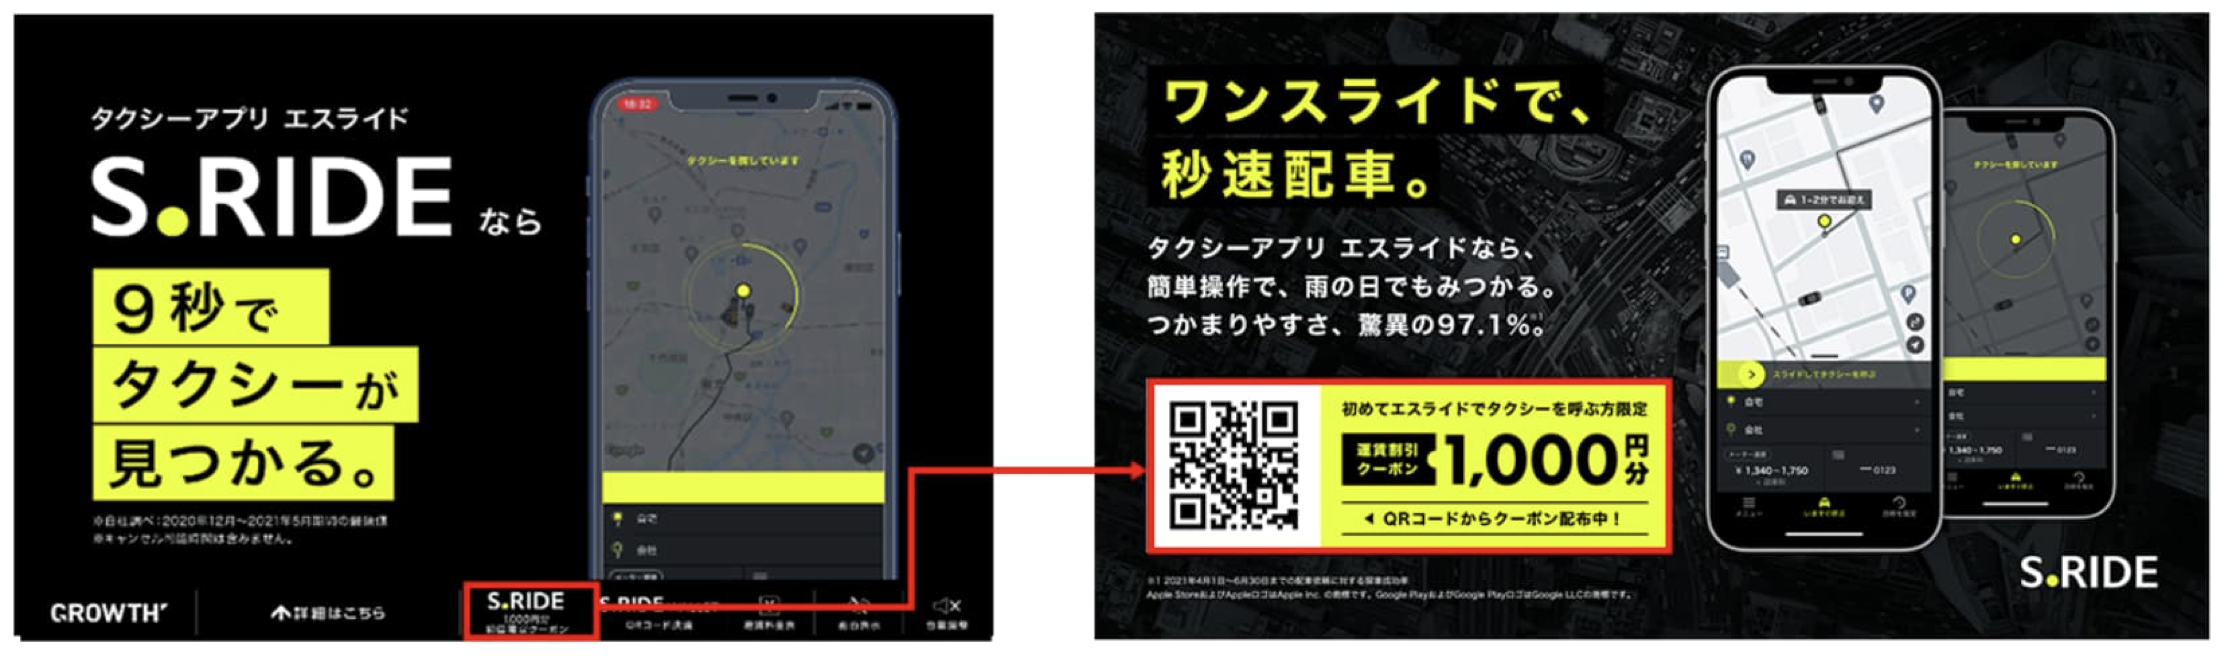 横浜で使えるタクシーアプリとクーポン情報